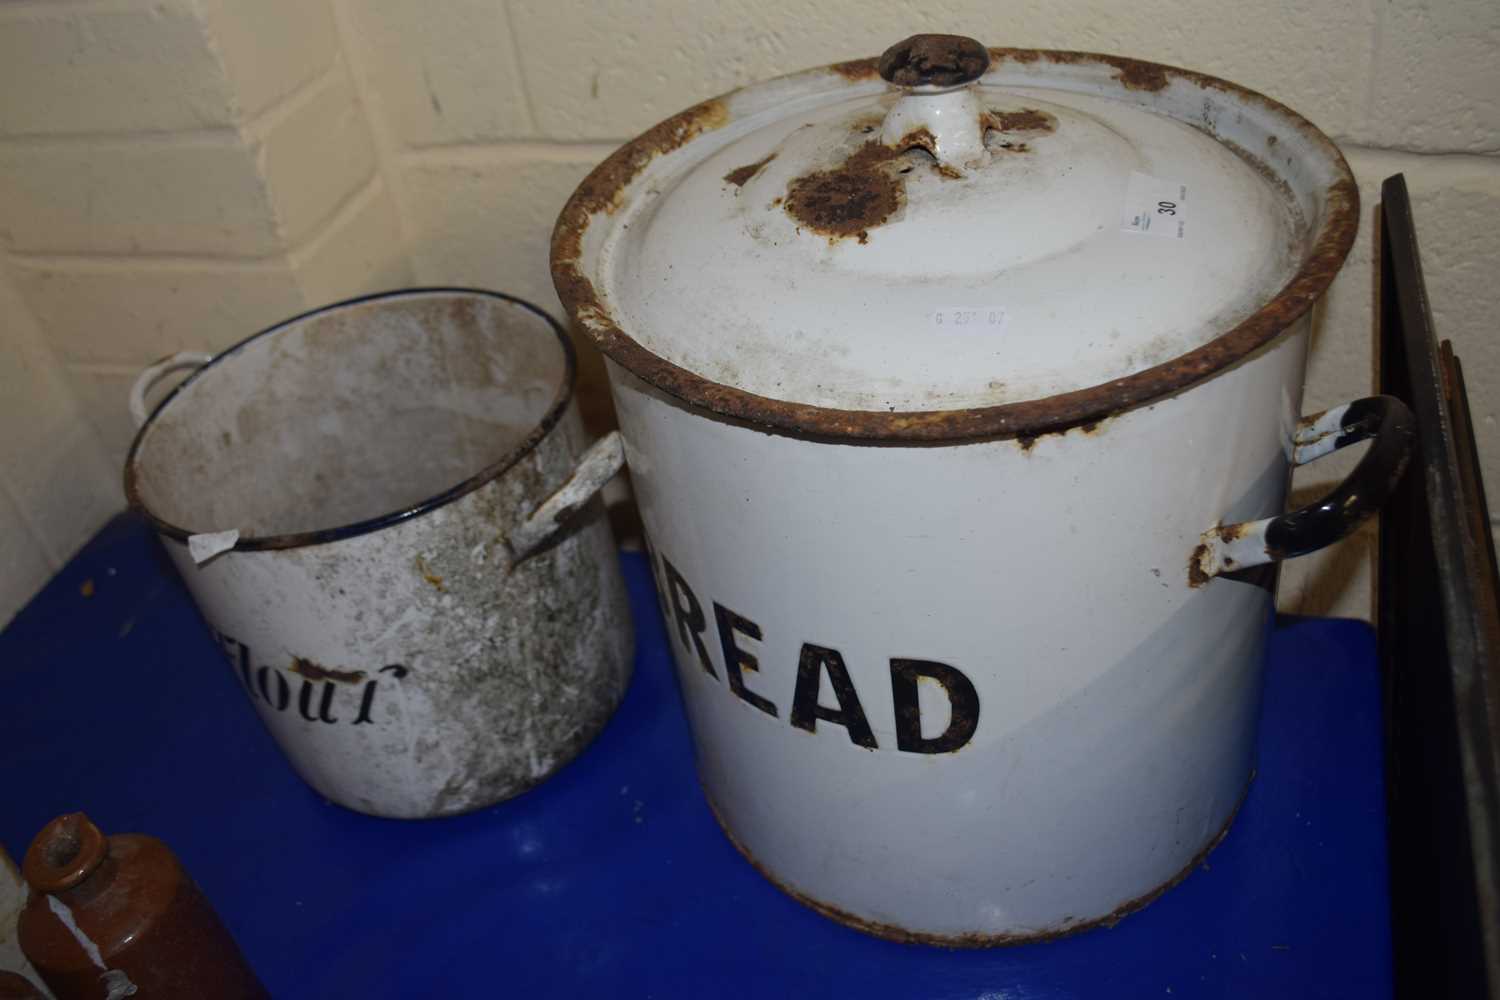 Vintage enamel bread bin and a similar flour bin